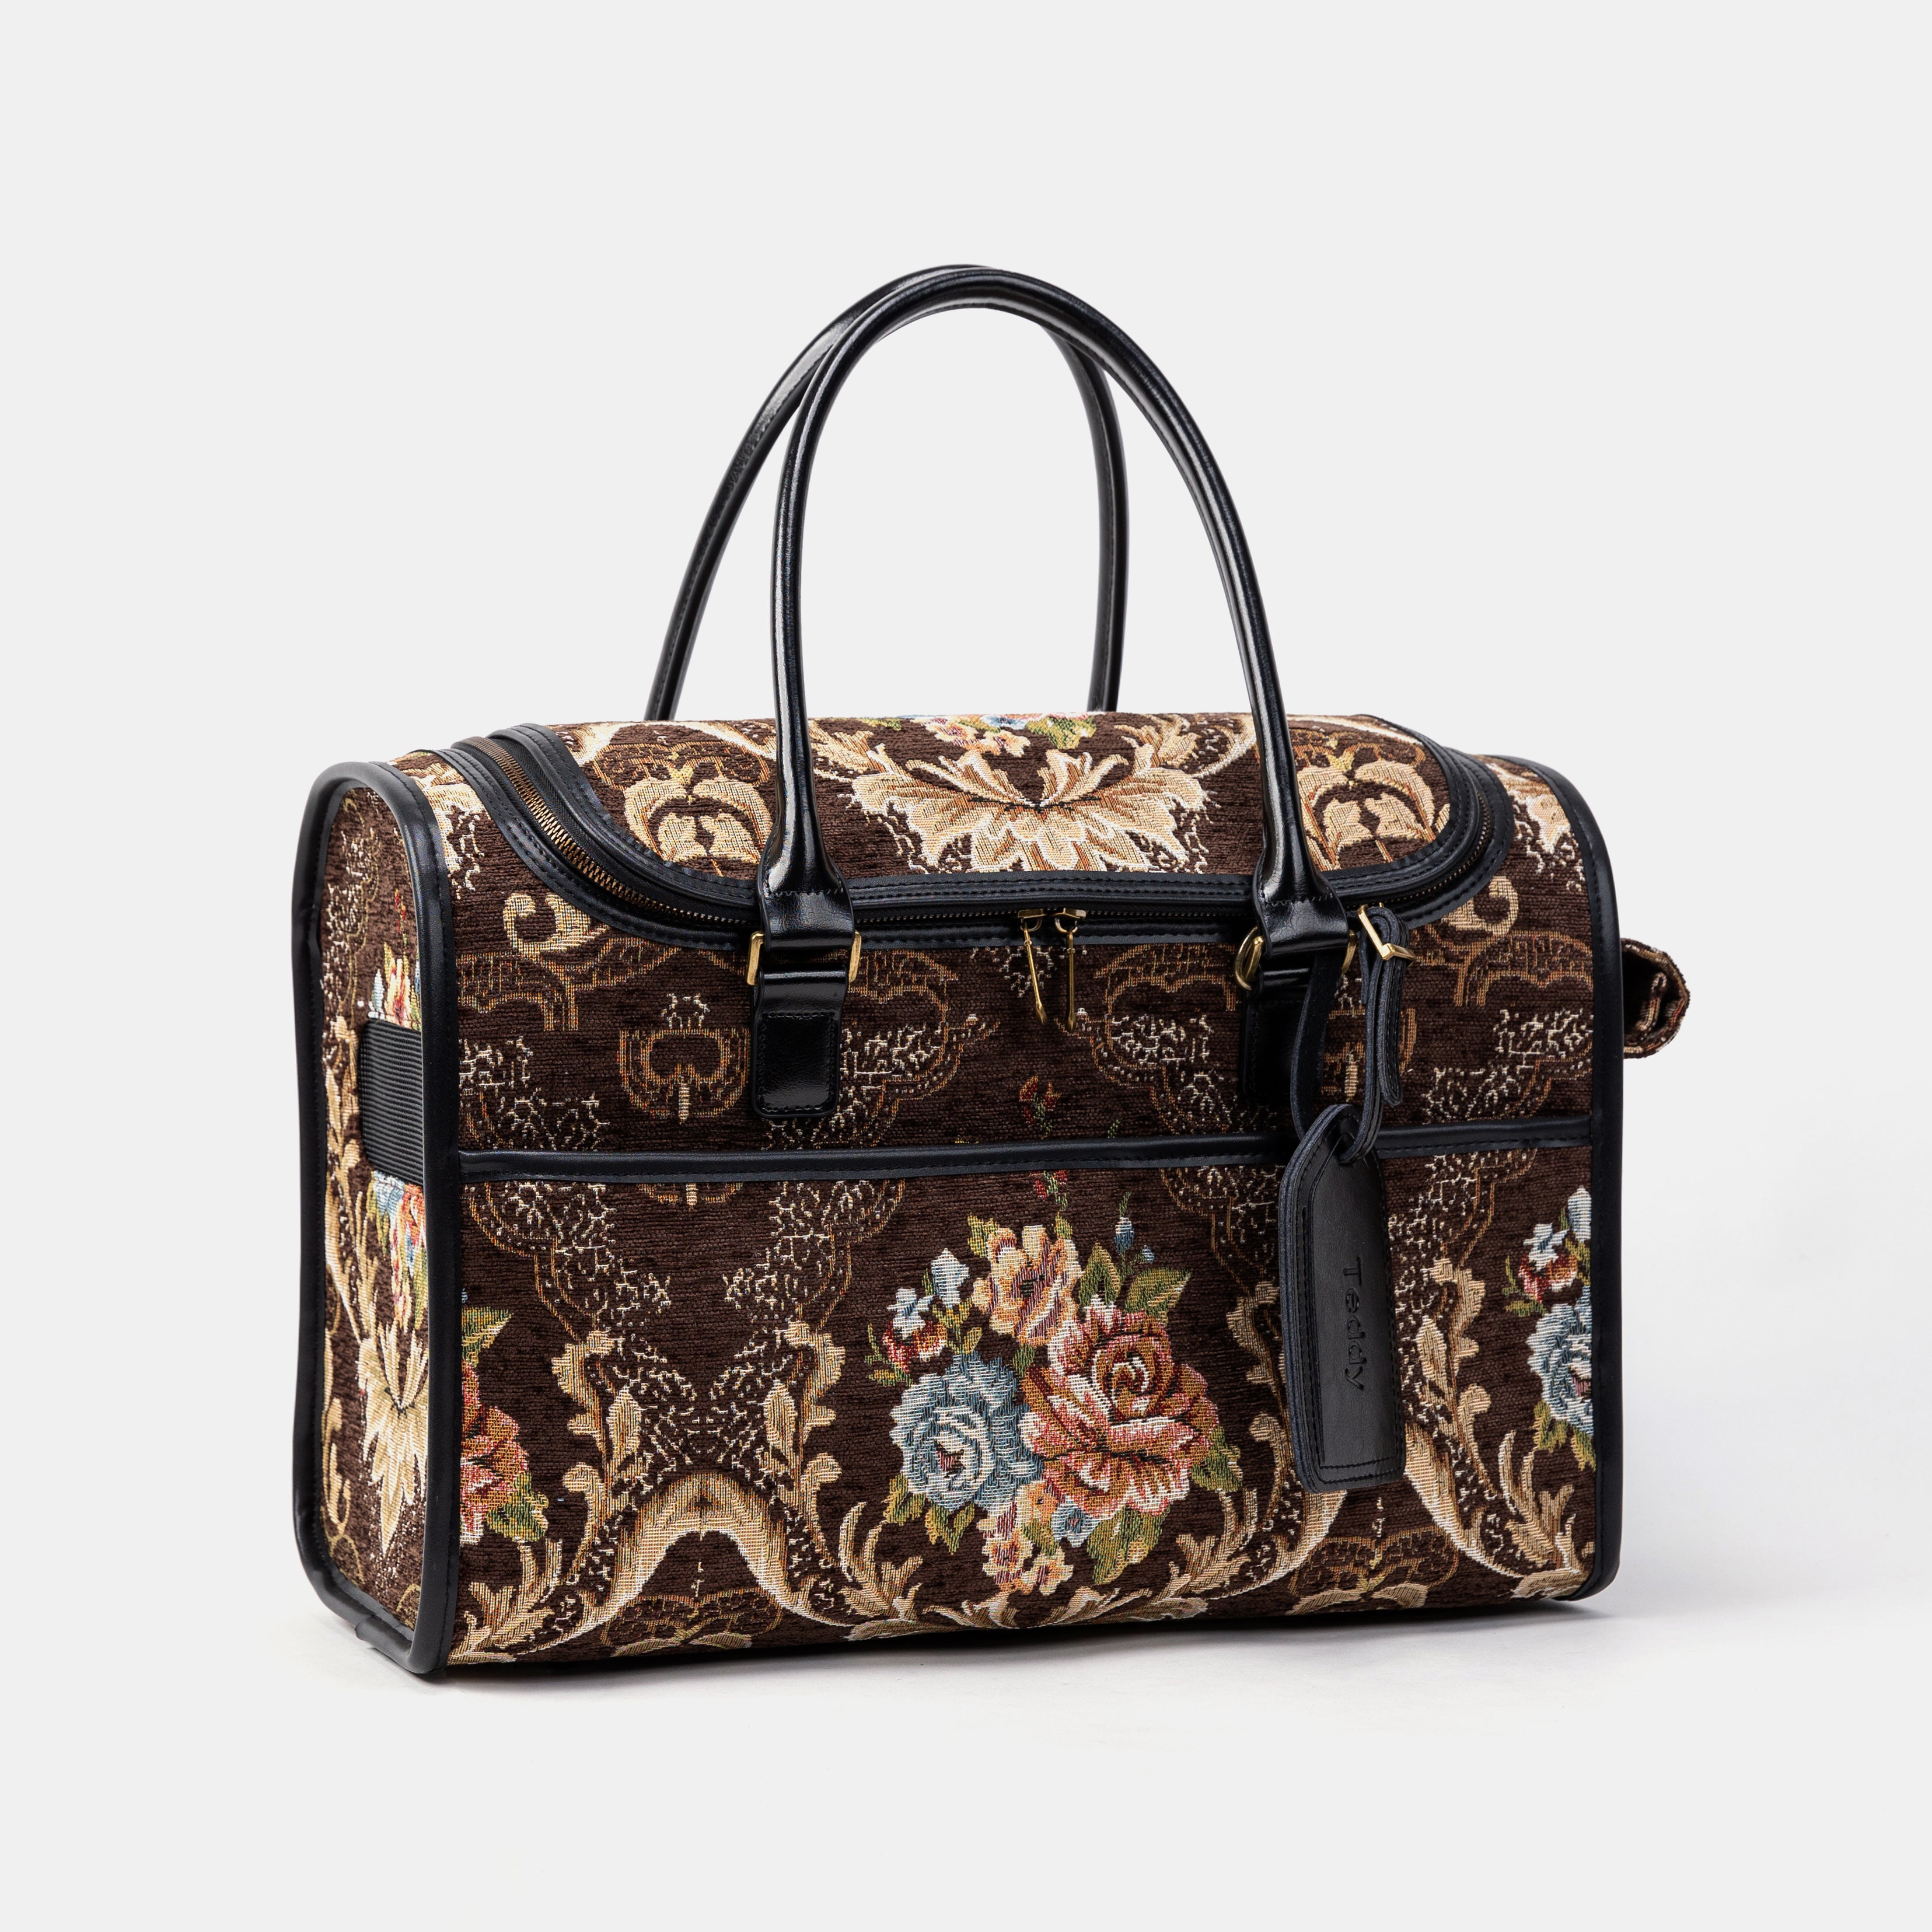 Travel Dog Carrier Bag Floral Brown Overview